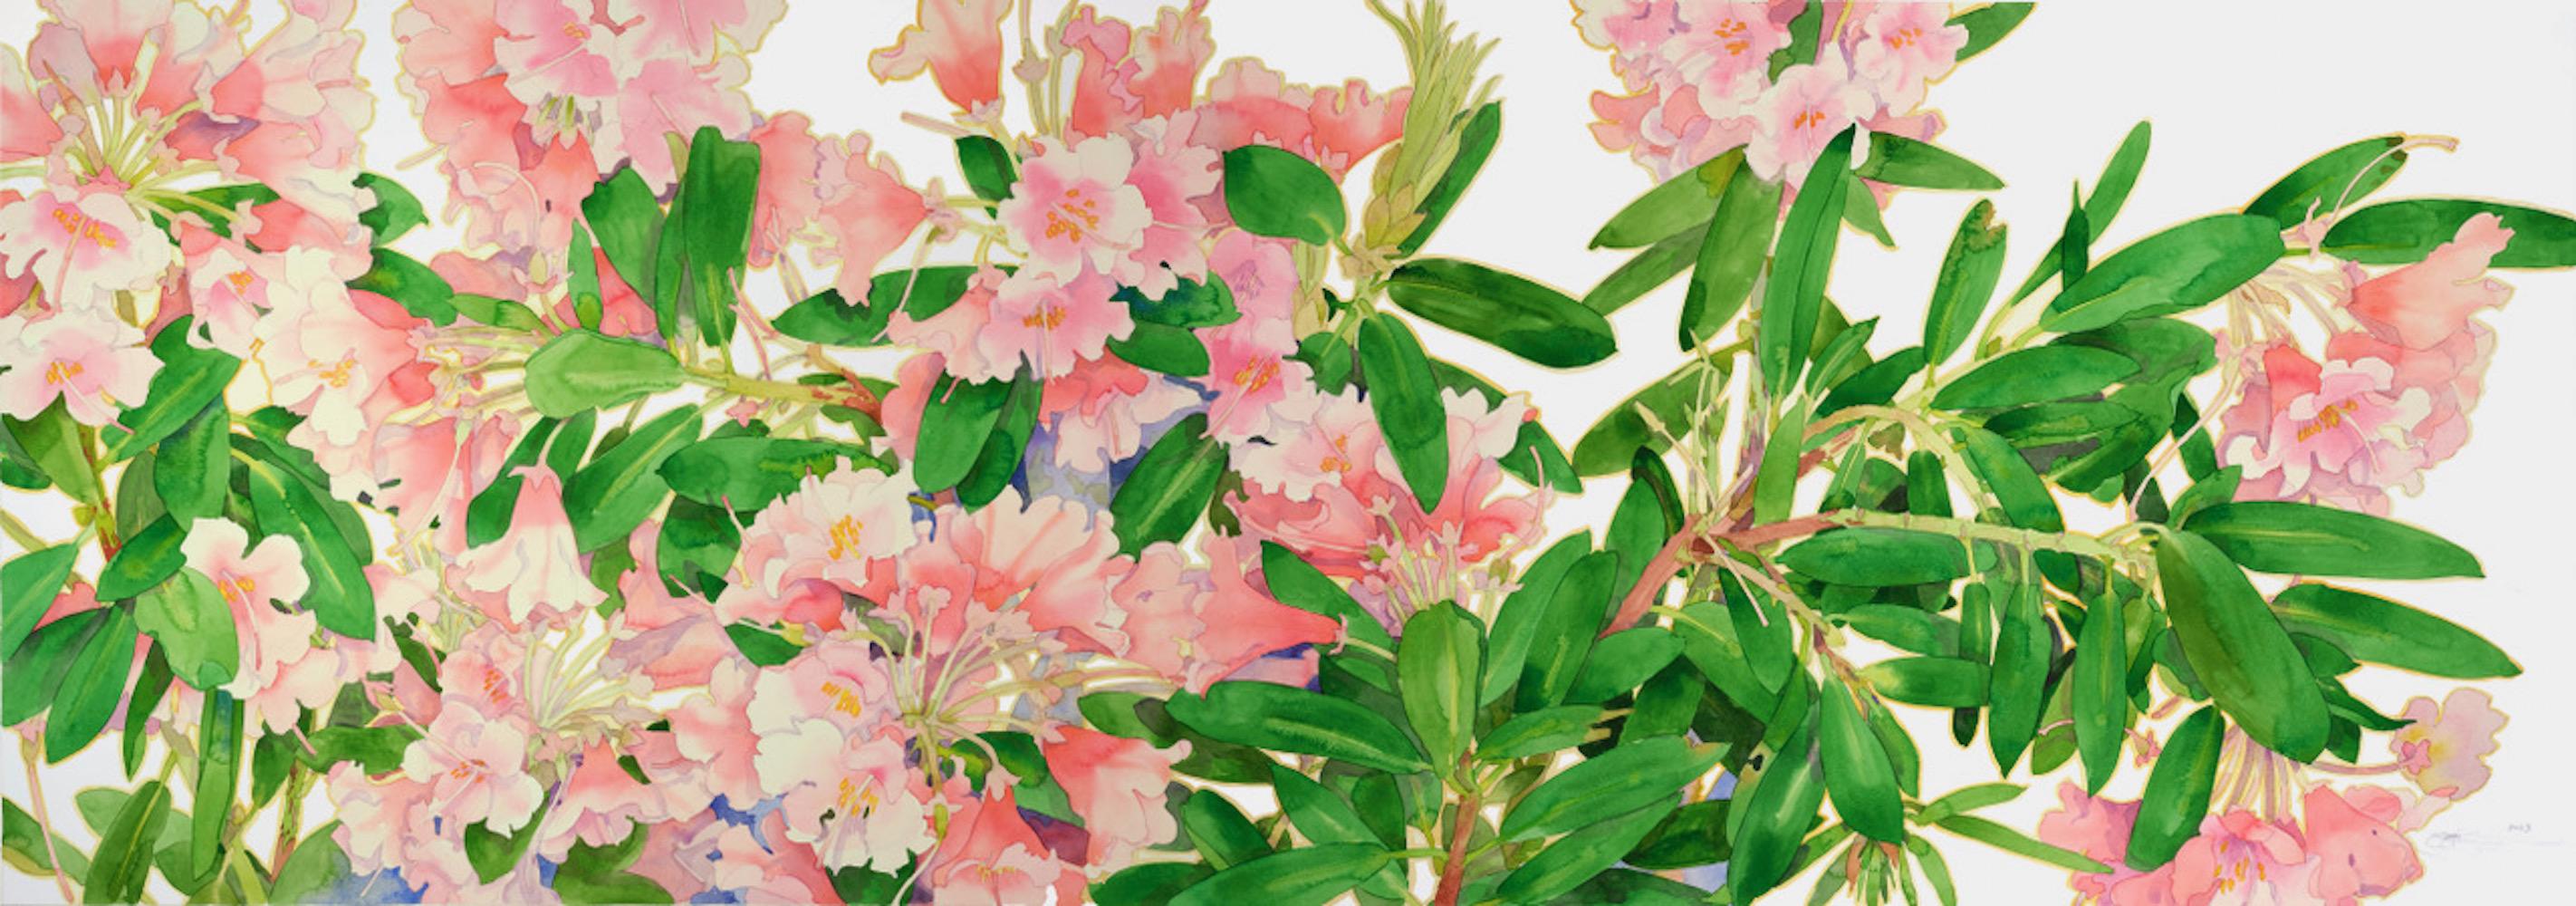 Gary Bukovnik Still-Life - Peach Rhododendrons - unframed